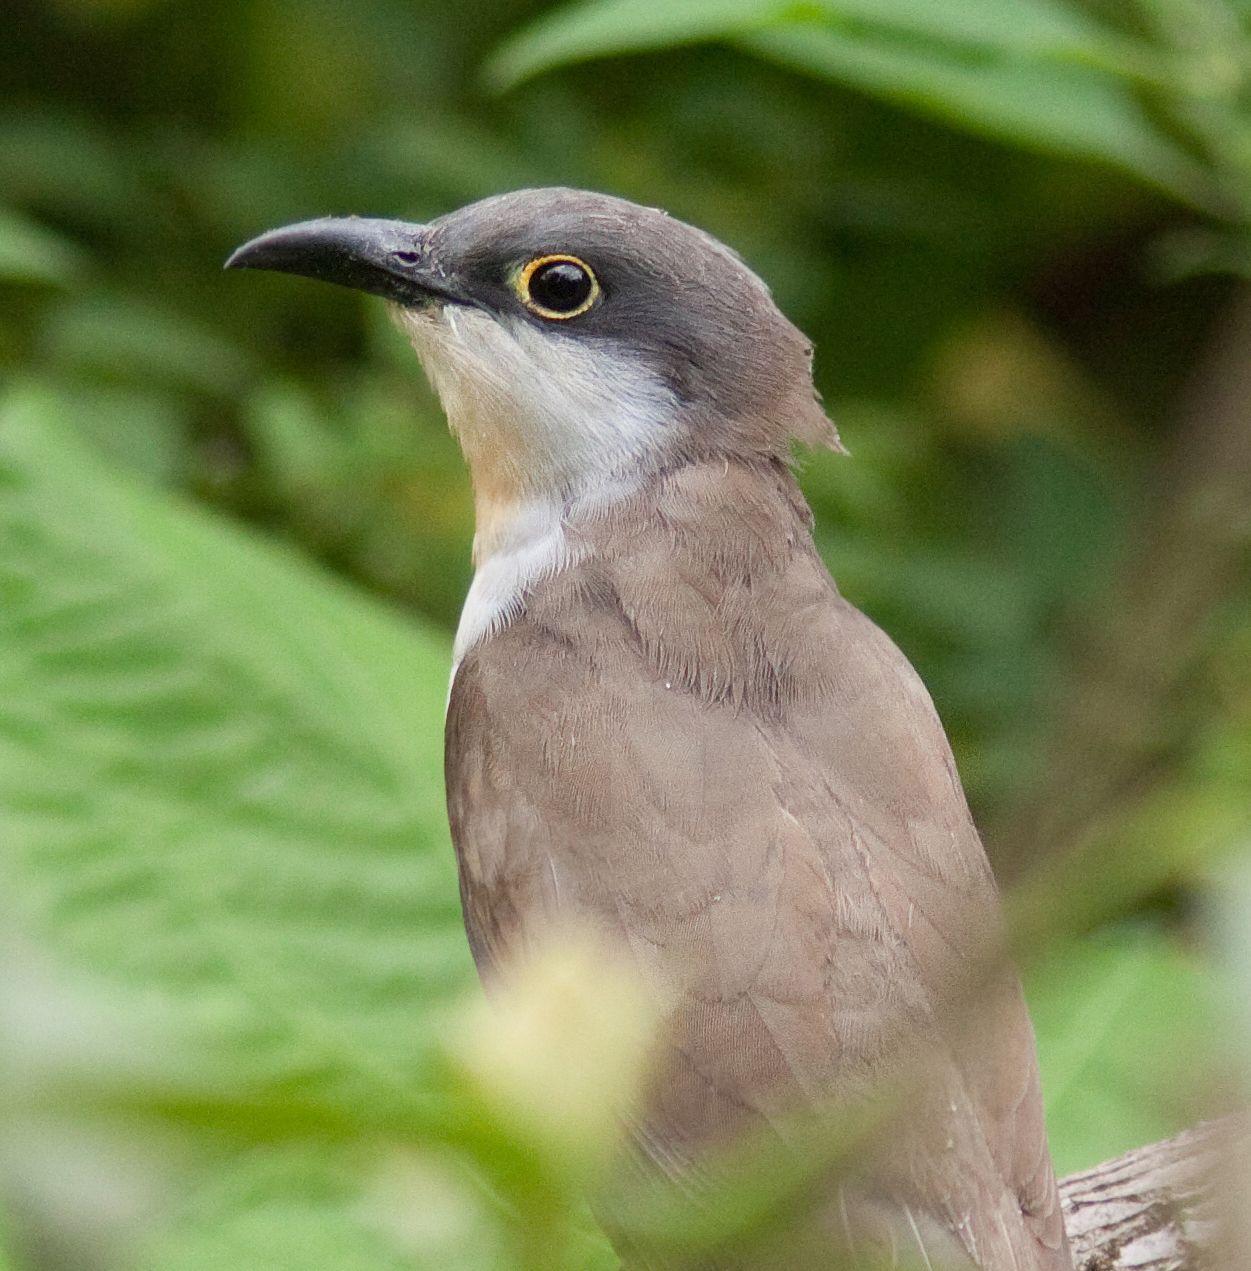 Dark-billed Cuckoo Photo by Michi Dvorak